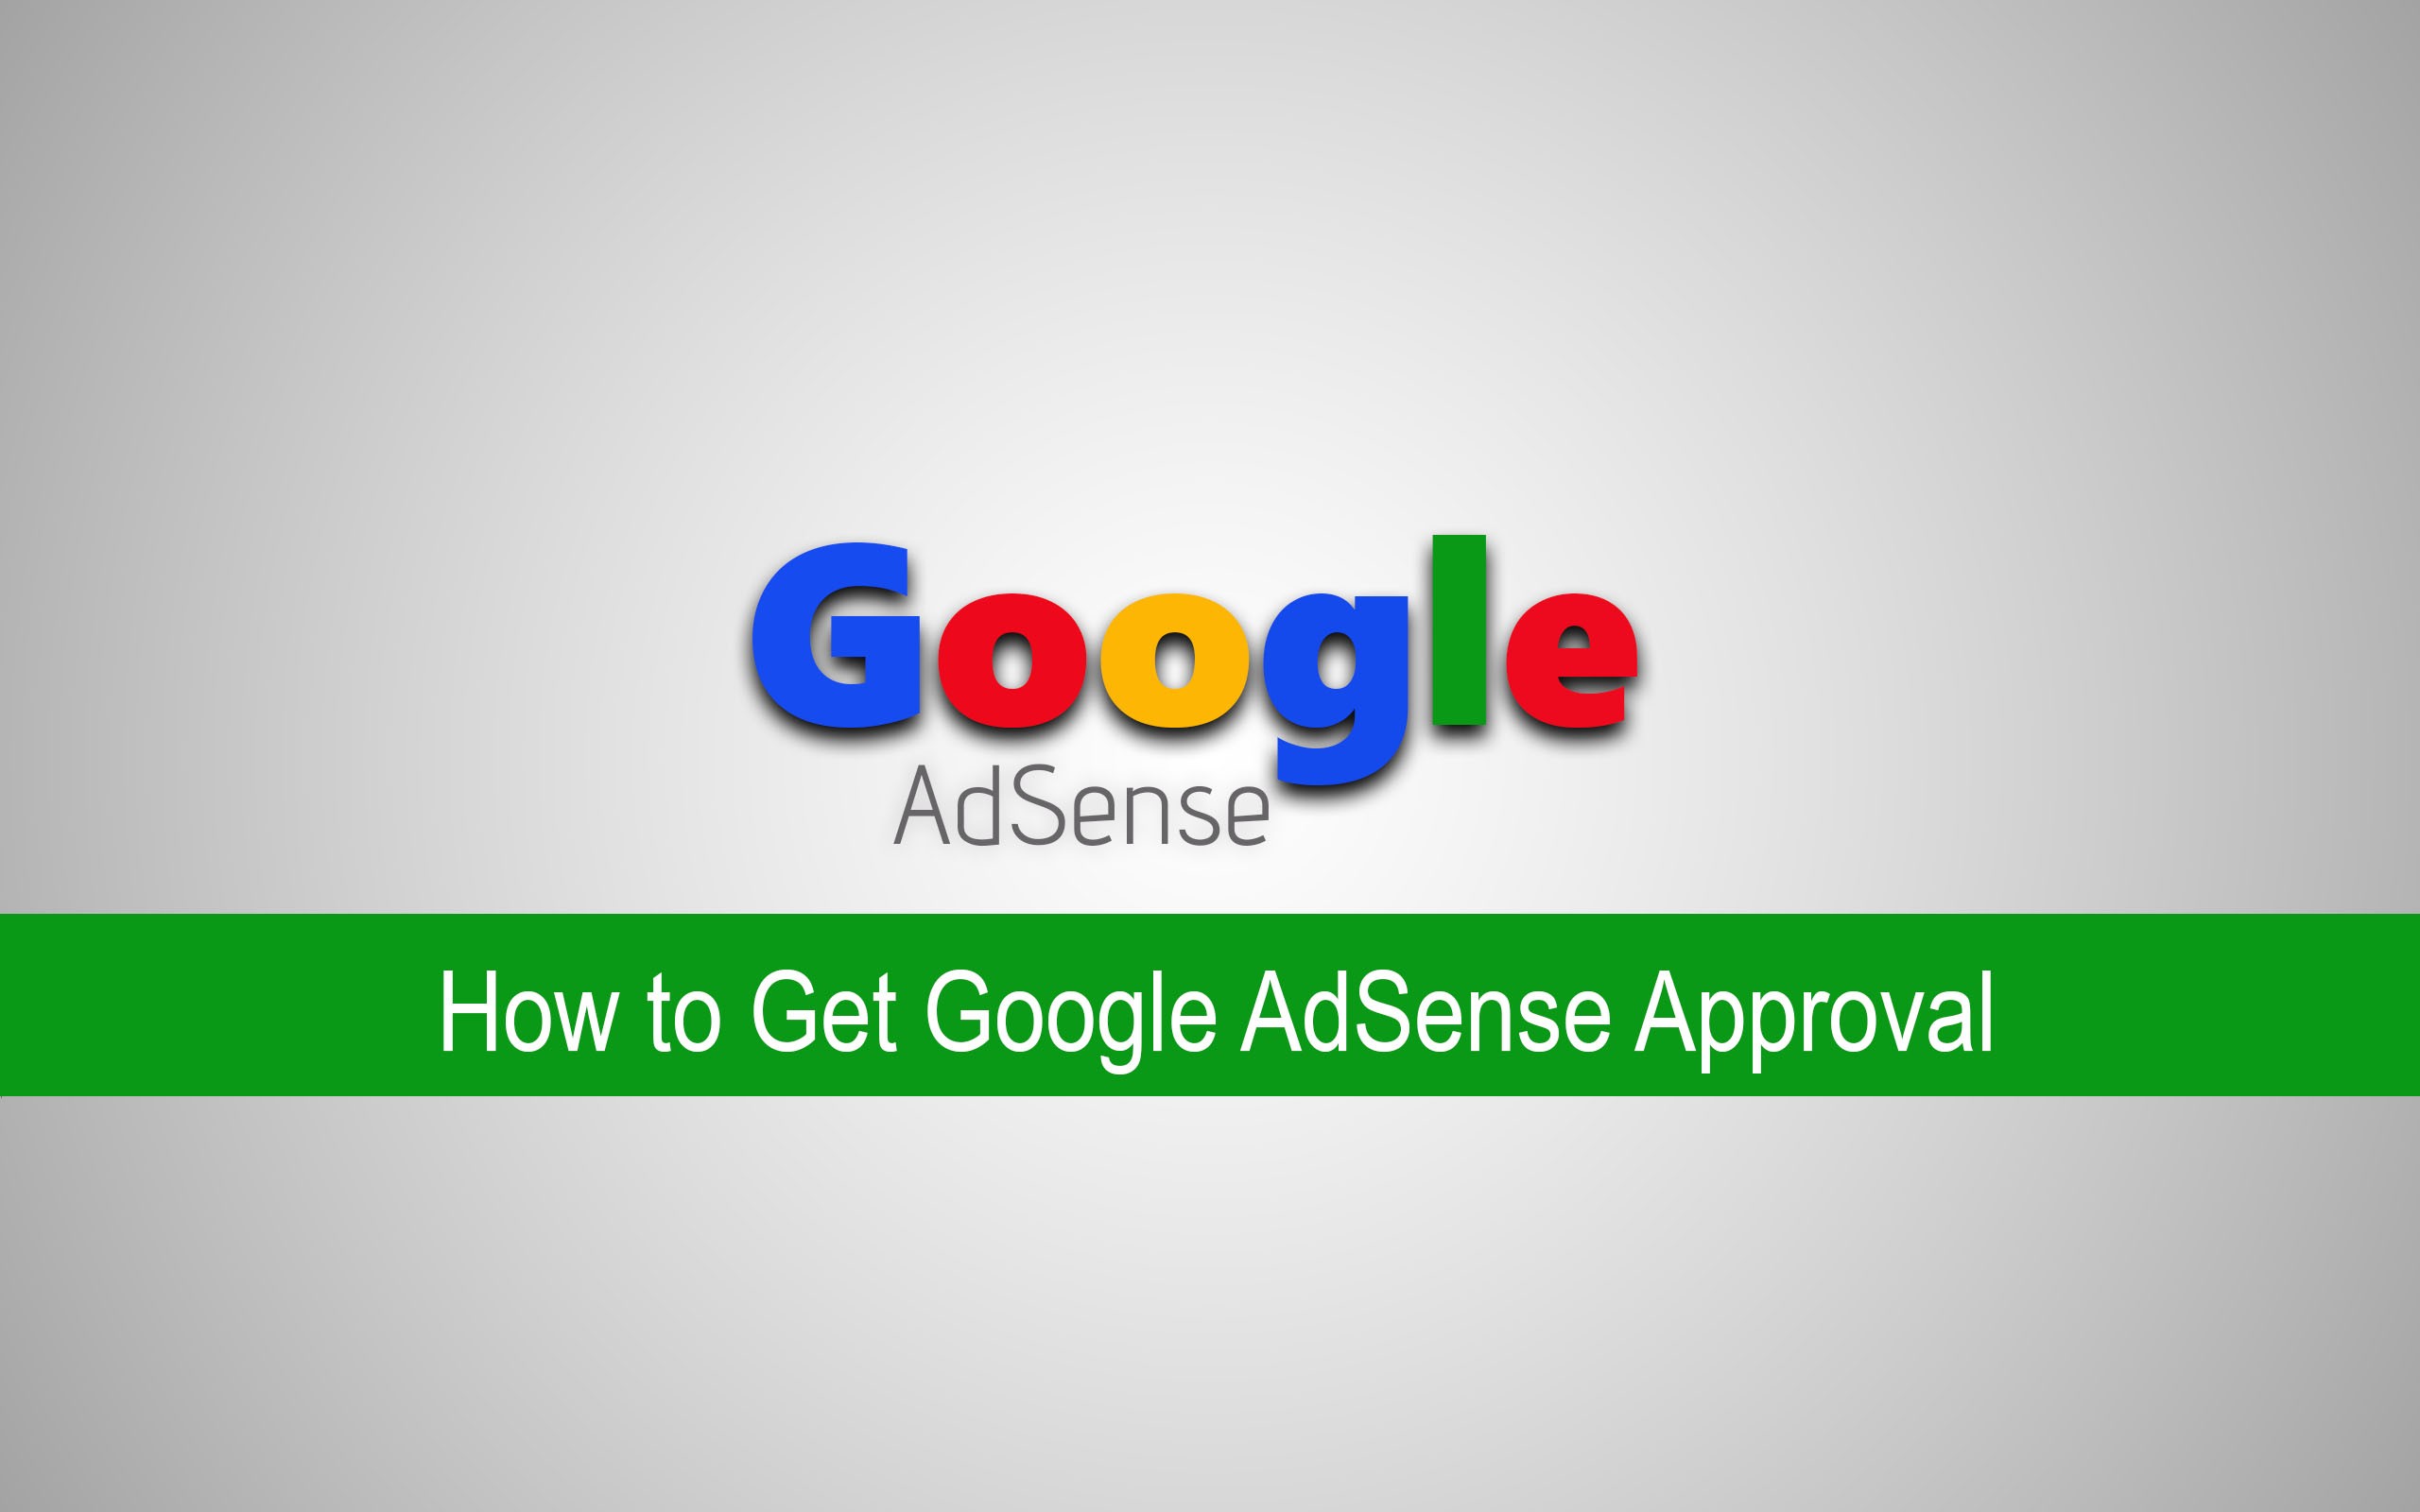 Applying for Google AdSense